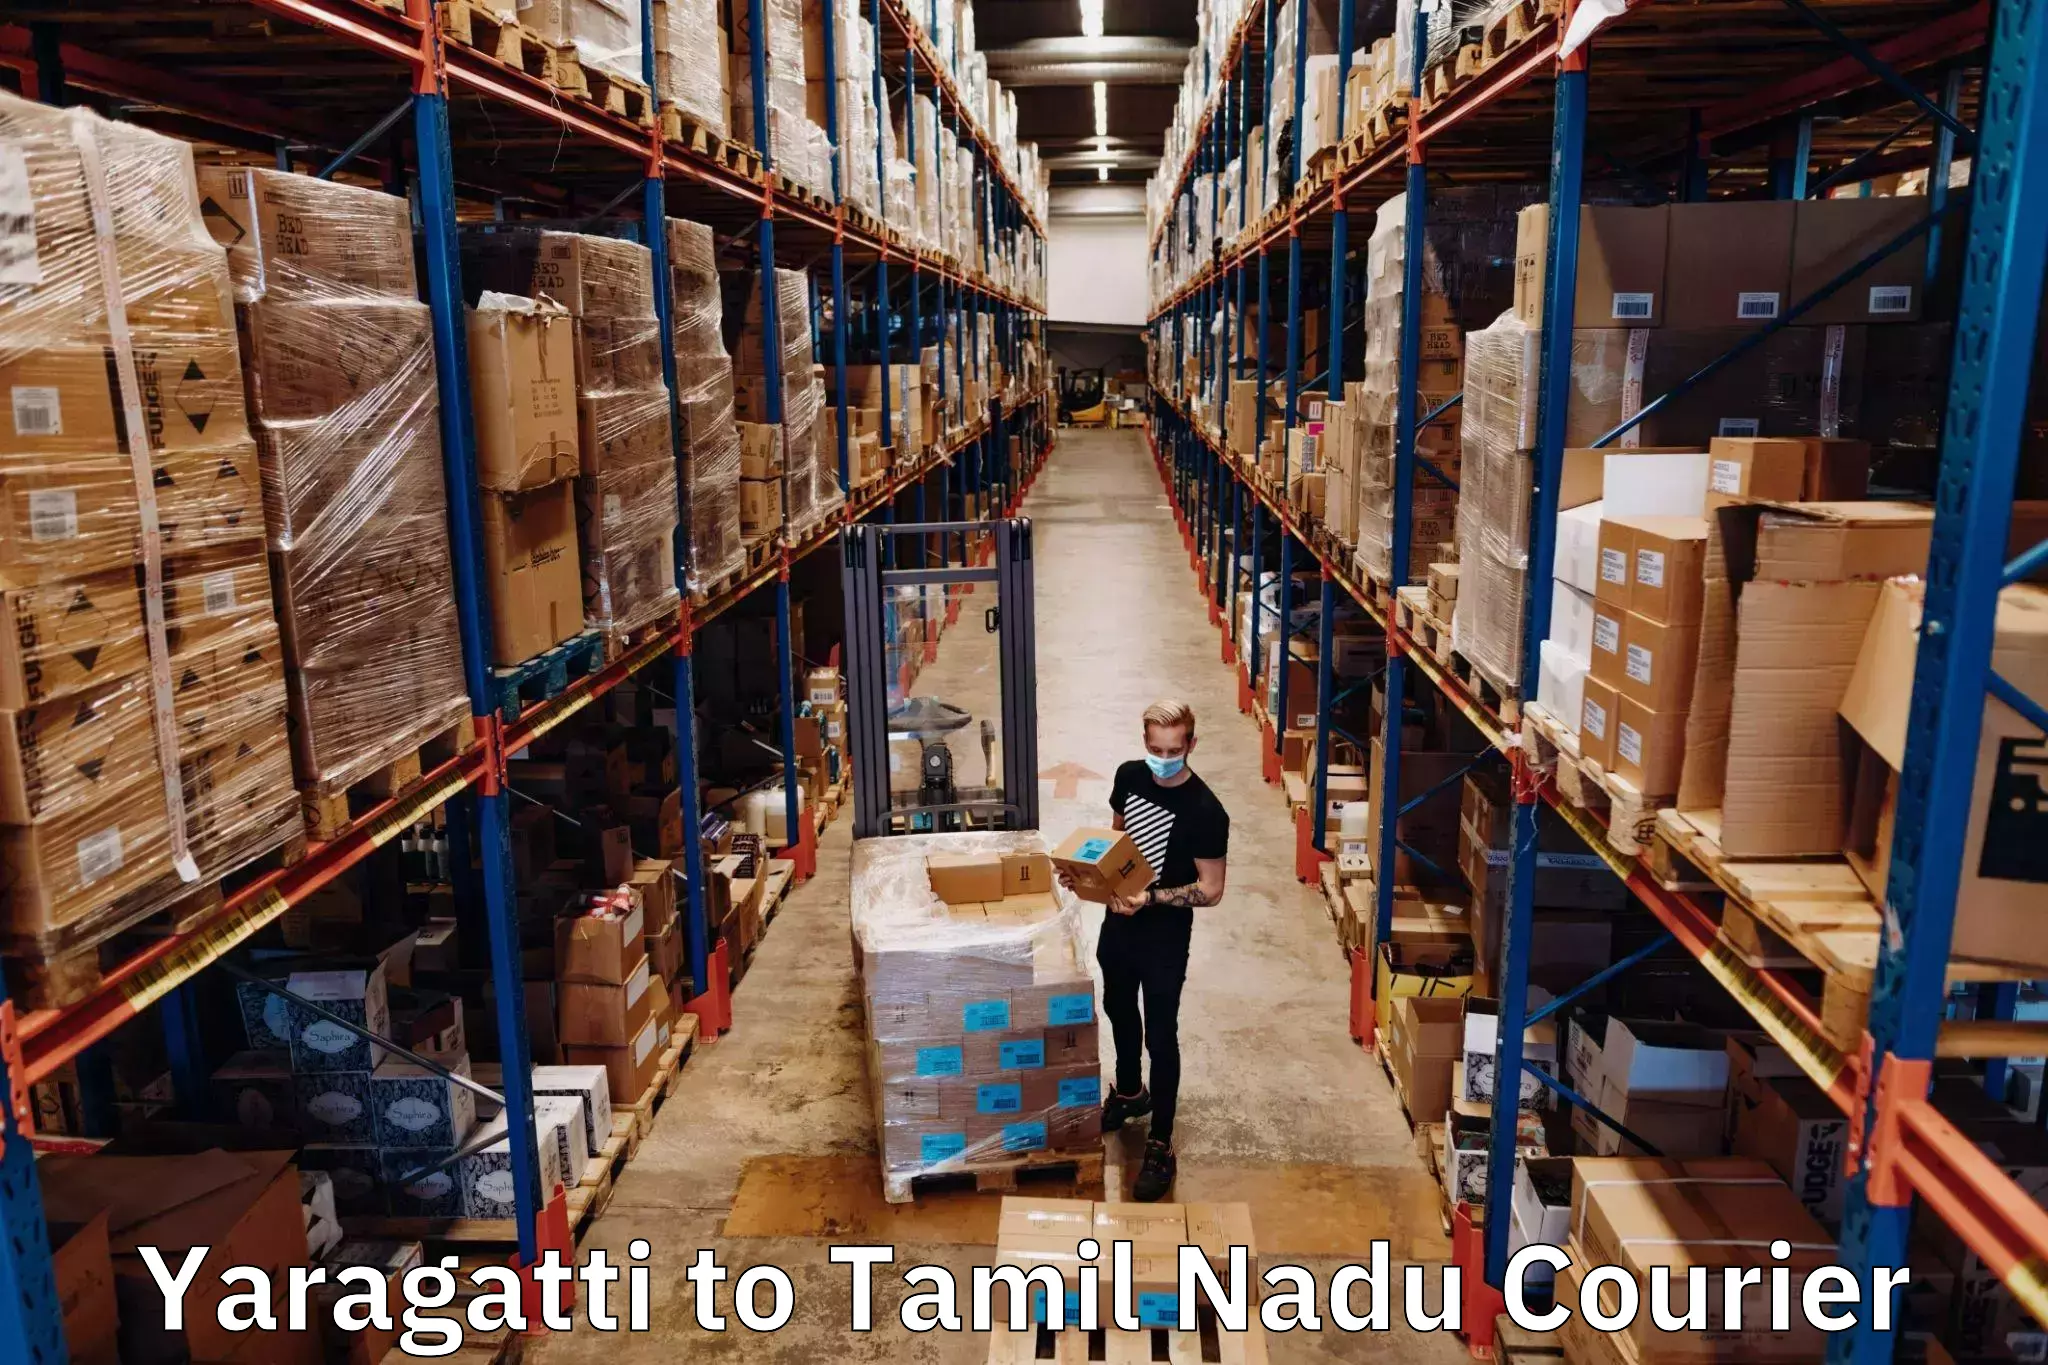 Versatile courier offerings Yaragatti to Tiruchirappalli